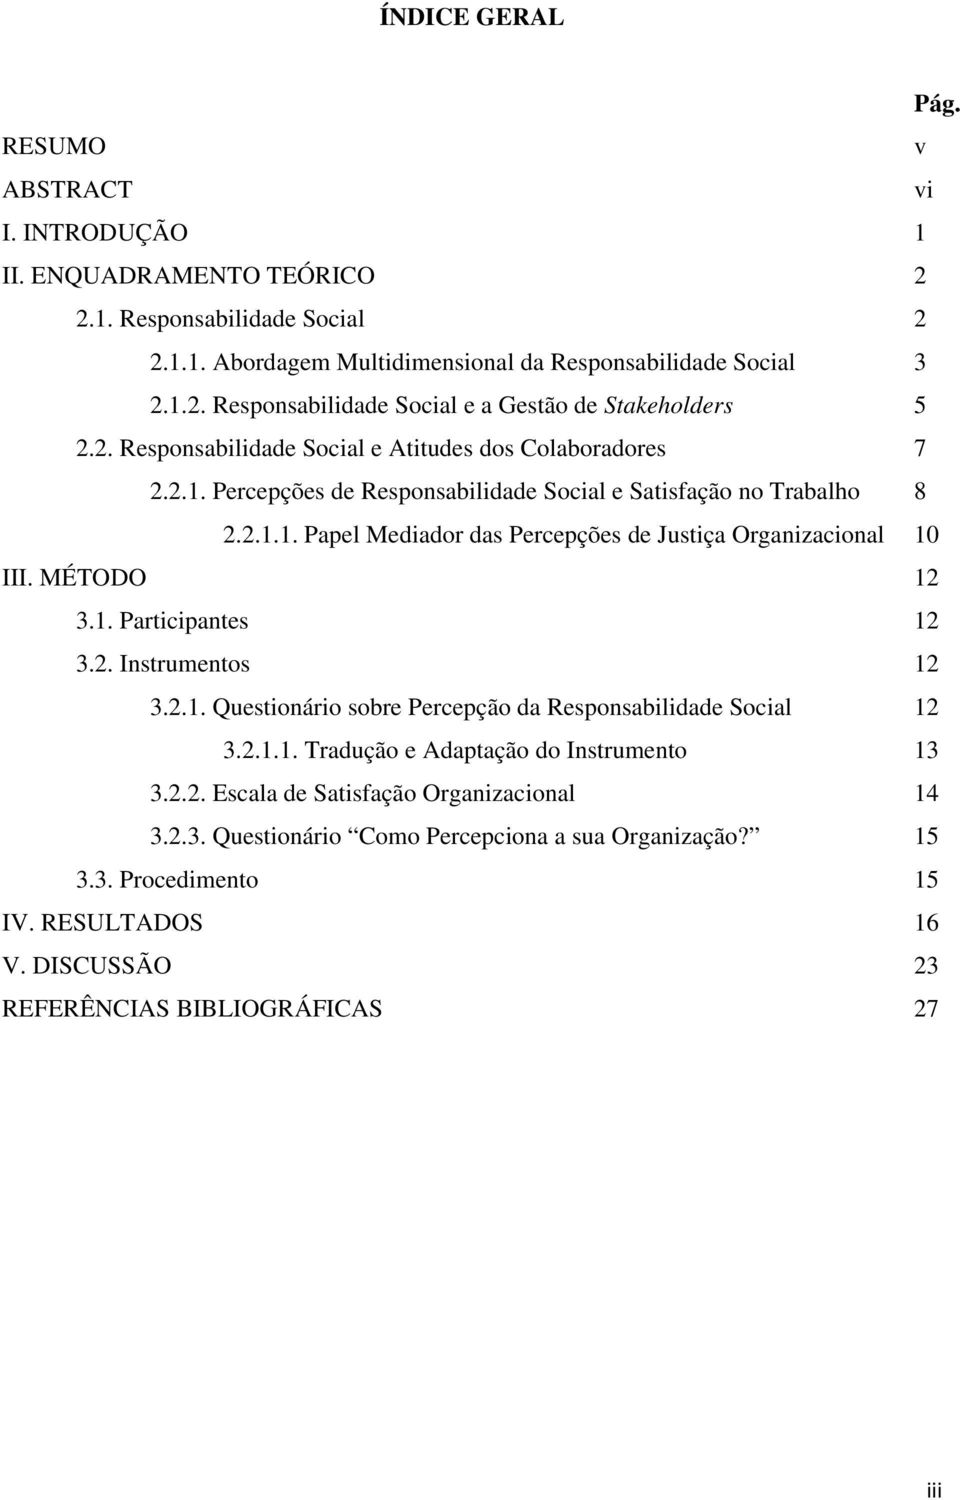 MÉTODO 12 3.1. Participantes 12 3.2. Instrumentos 12 3.2.1. Questionário sobre Percepção da Responsabilidade Social 12 3.2.1.1. Tradução e Adaptação do Instrumento 13 3.2.2. Escala de Satisfação Organizacional 14 3.